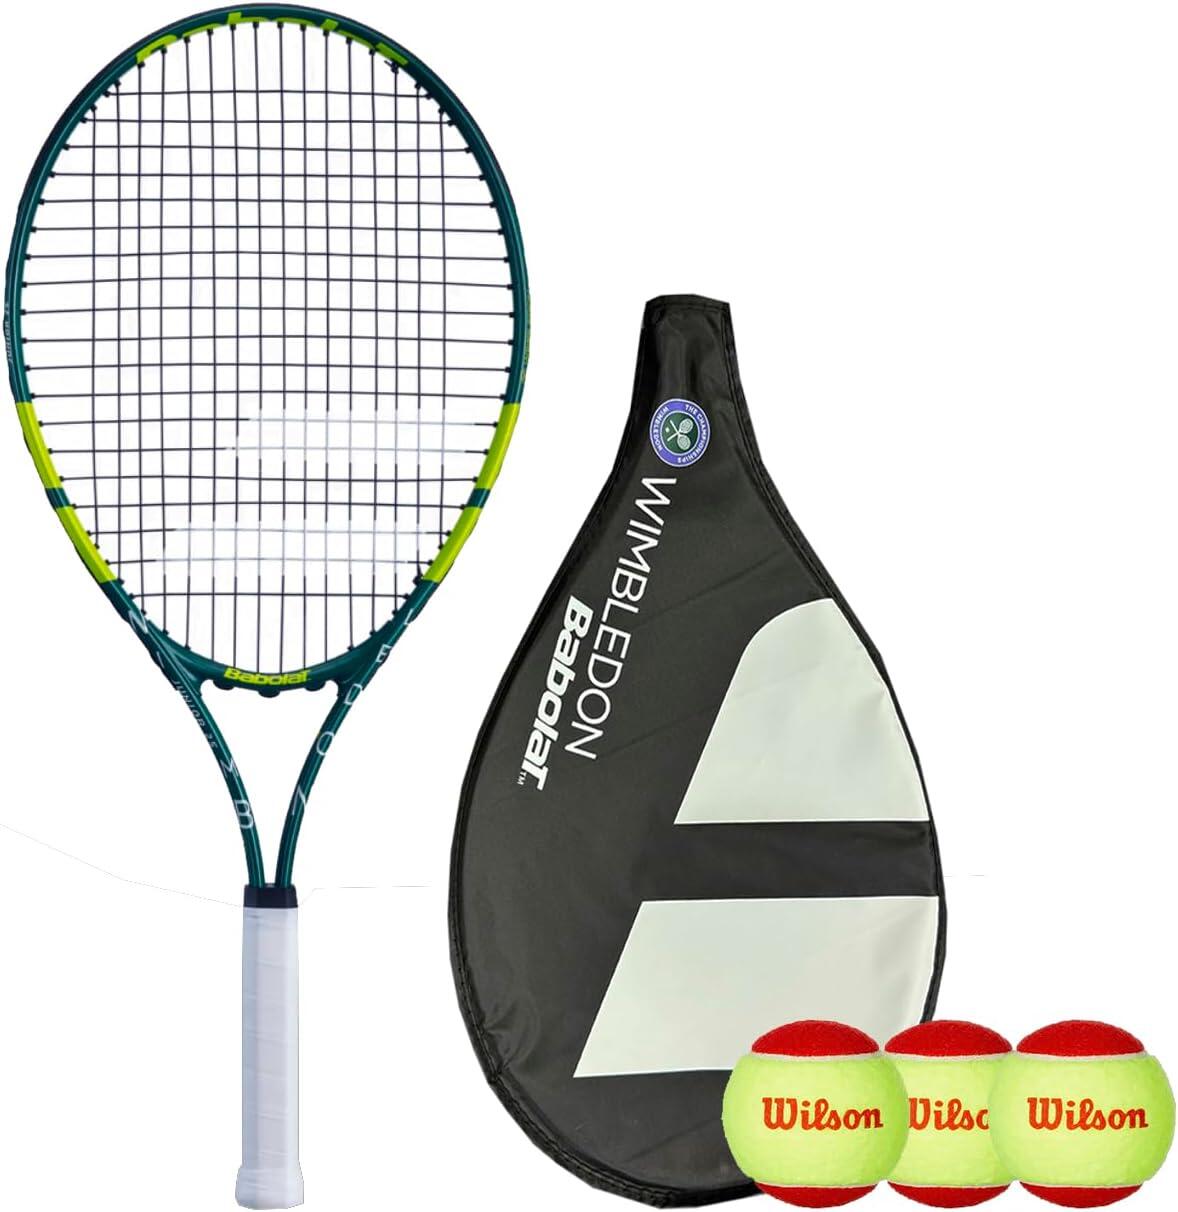 BABOLAT Babolat Wimbledon 23" Junior Tennis Racket, Cover & 3 Tennis Balls